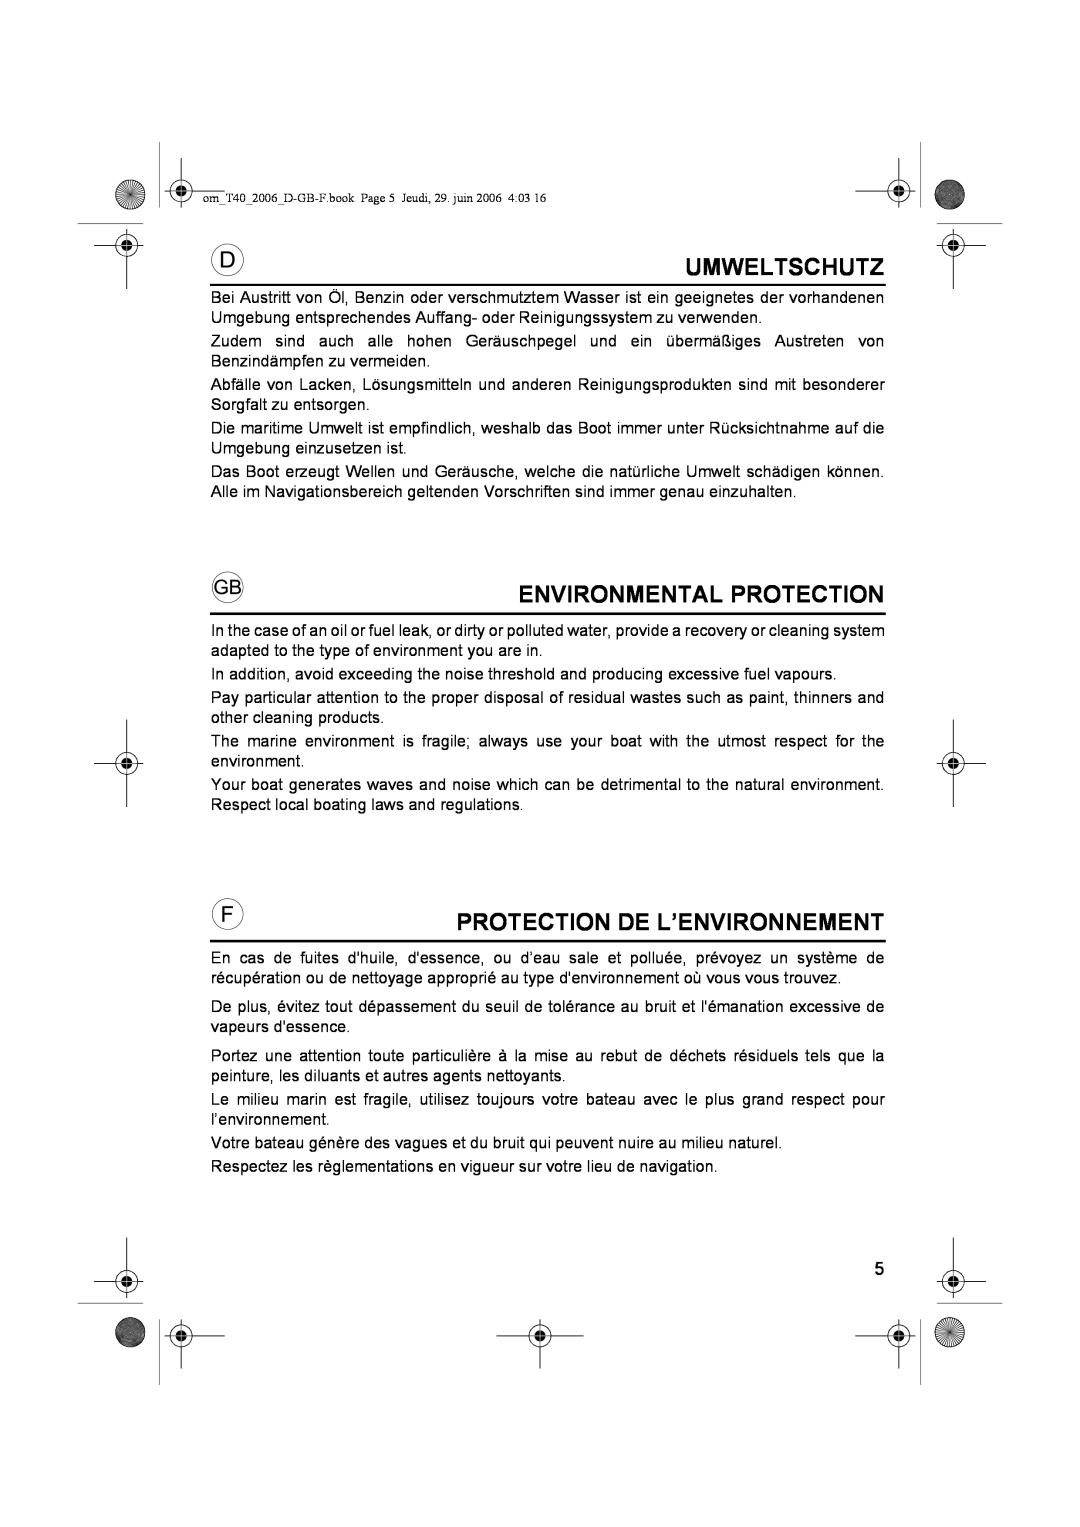 Honda Power Equipment T27, T32, T38, T35, T30, T40, T20 Umweltschutz, Environmental Protection, Protection De L’Environnement 